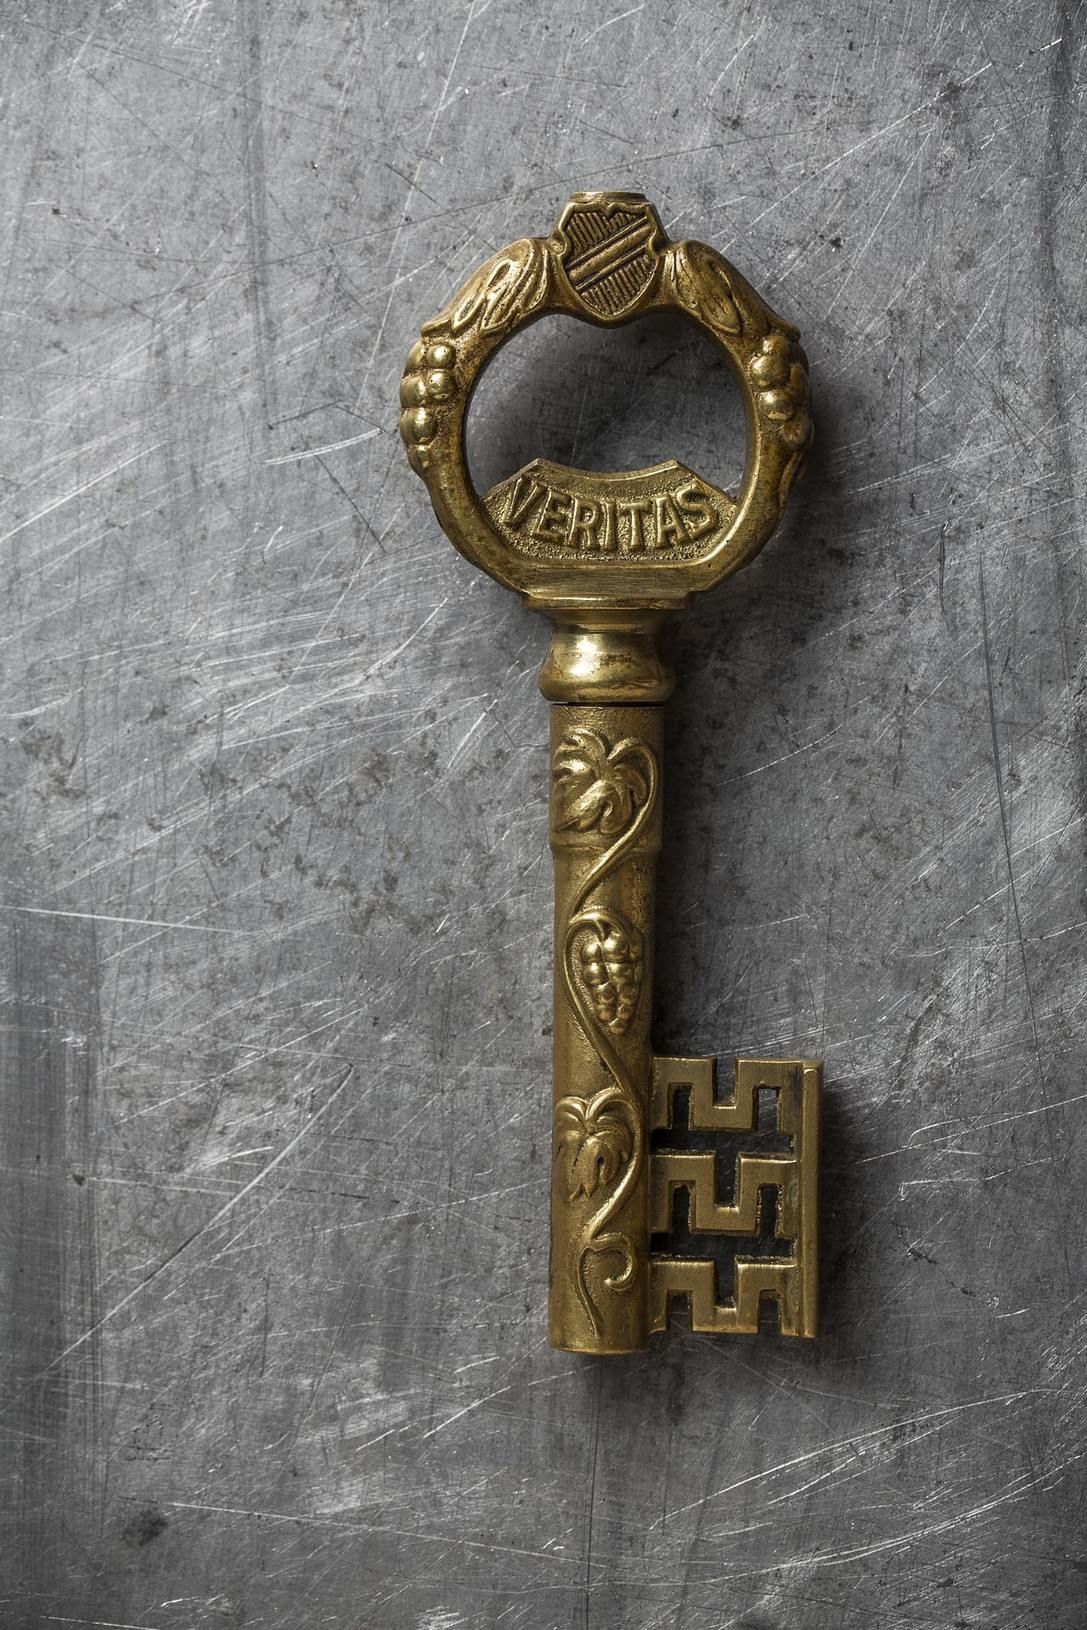 Ключ, In Vino Veritas, Германия, середина XX века. Штопоры в виде ключей появились в 1920-х годах и пользовались невероятной популярностью на протяжении всего XX века. Французы переиначили историю про ключи от города в историю про ключи от погреба, но час